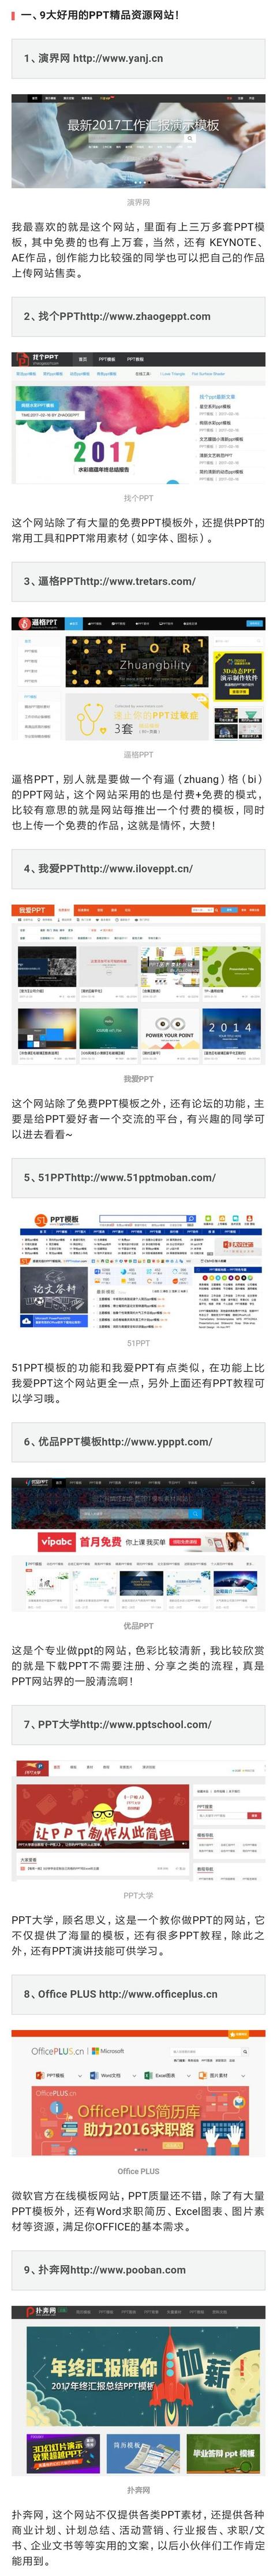 9大PPT素材网站+69GPPT精品资源（含视频教程）